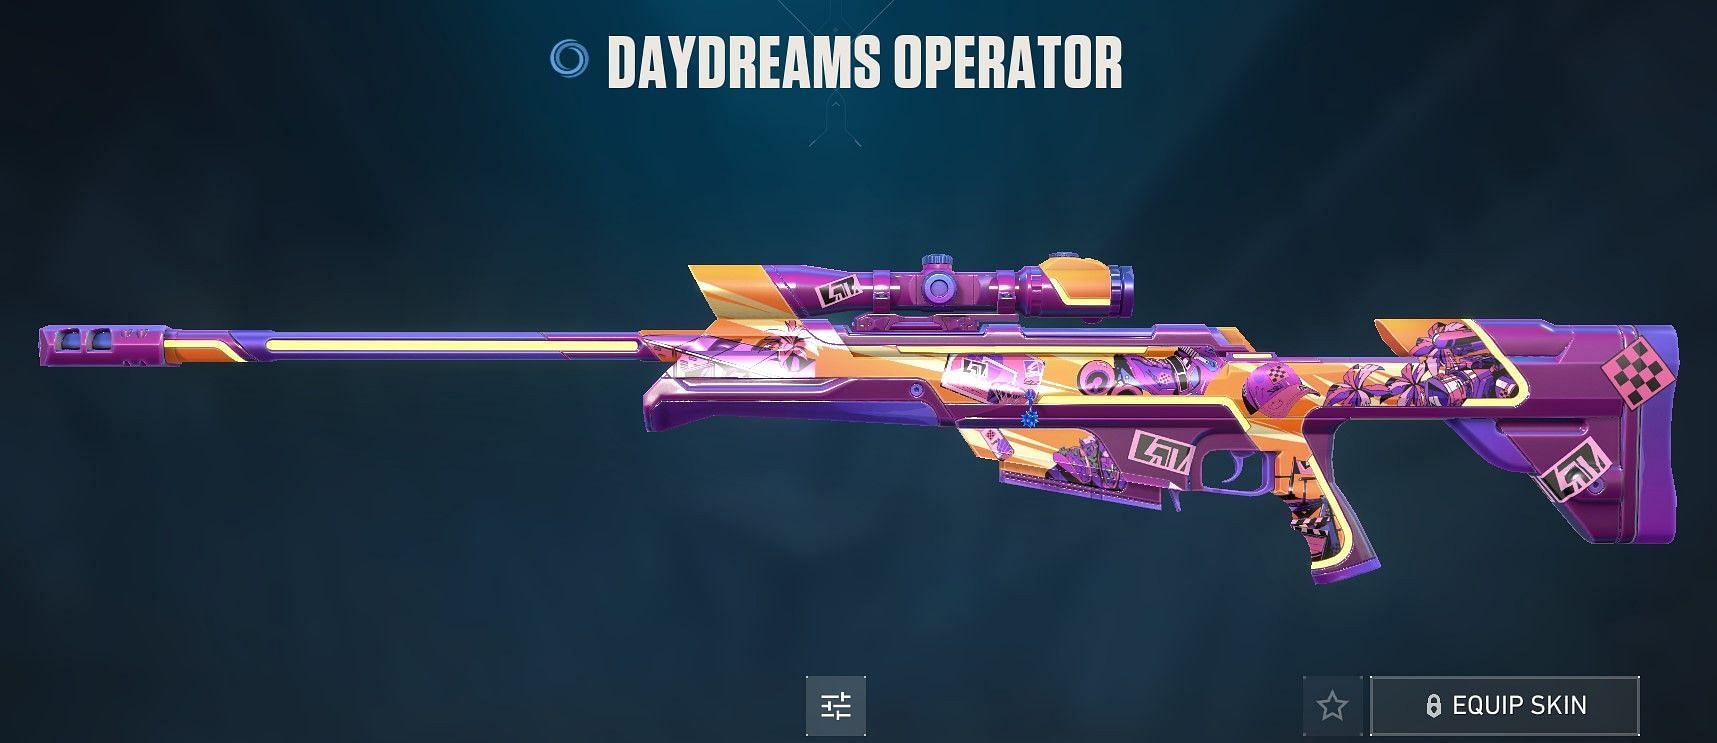 Daydreams Operator (Image via Riot Games)